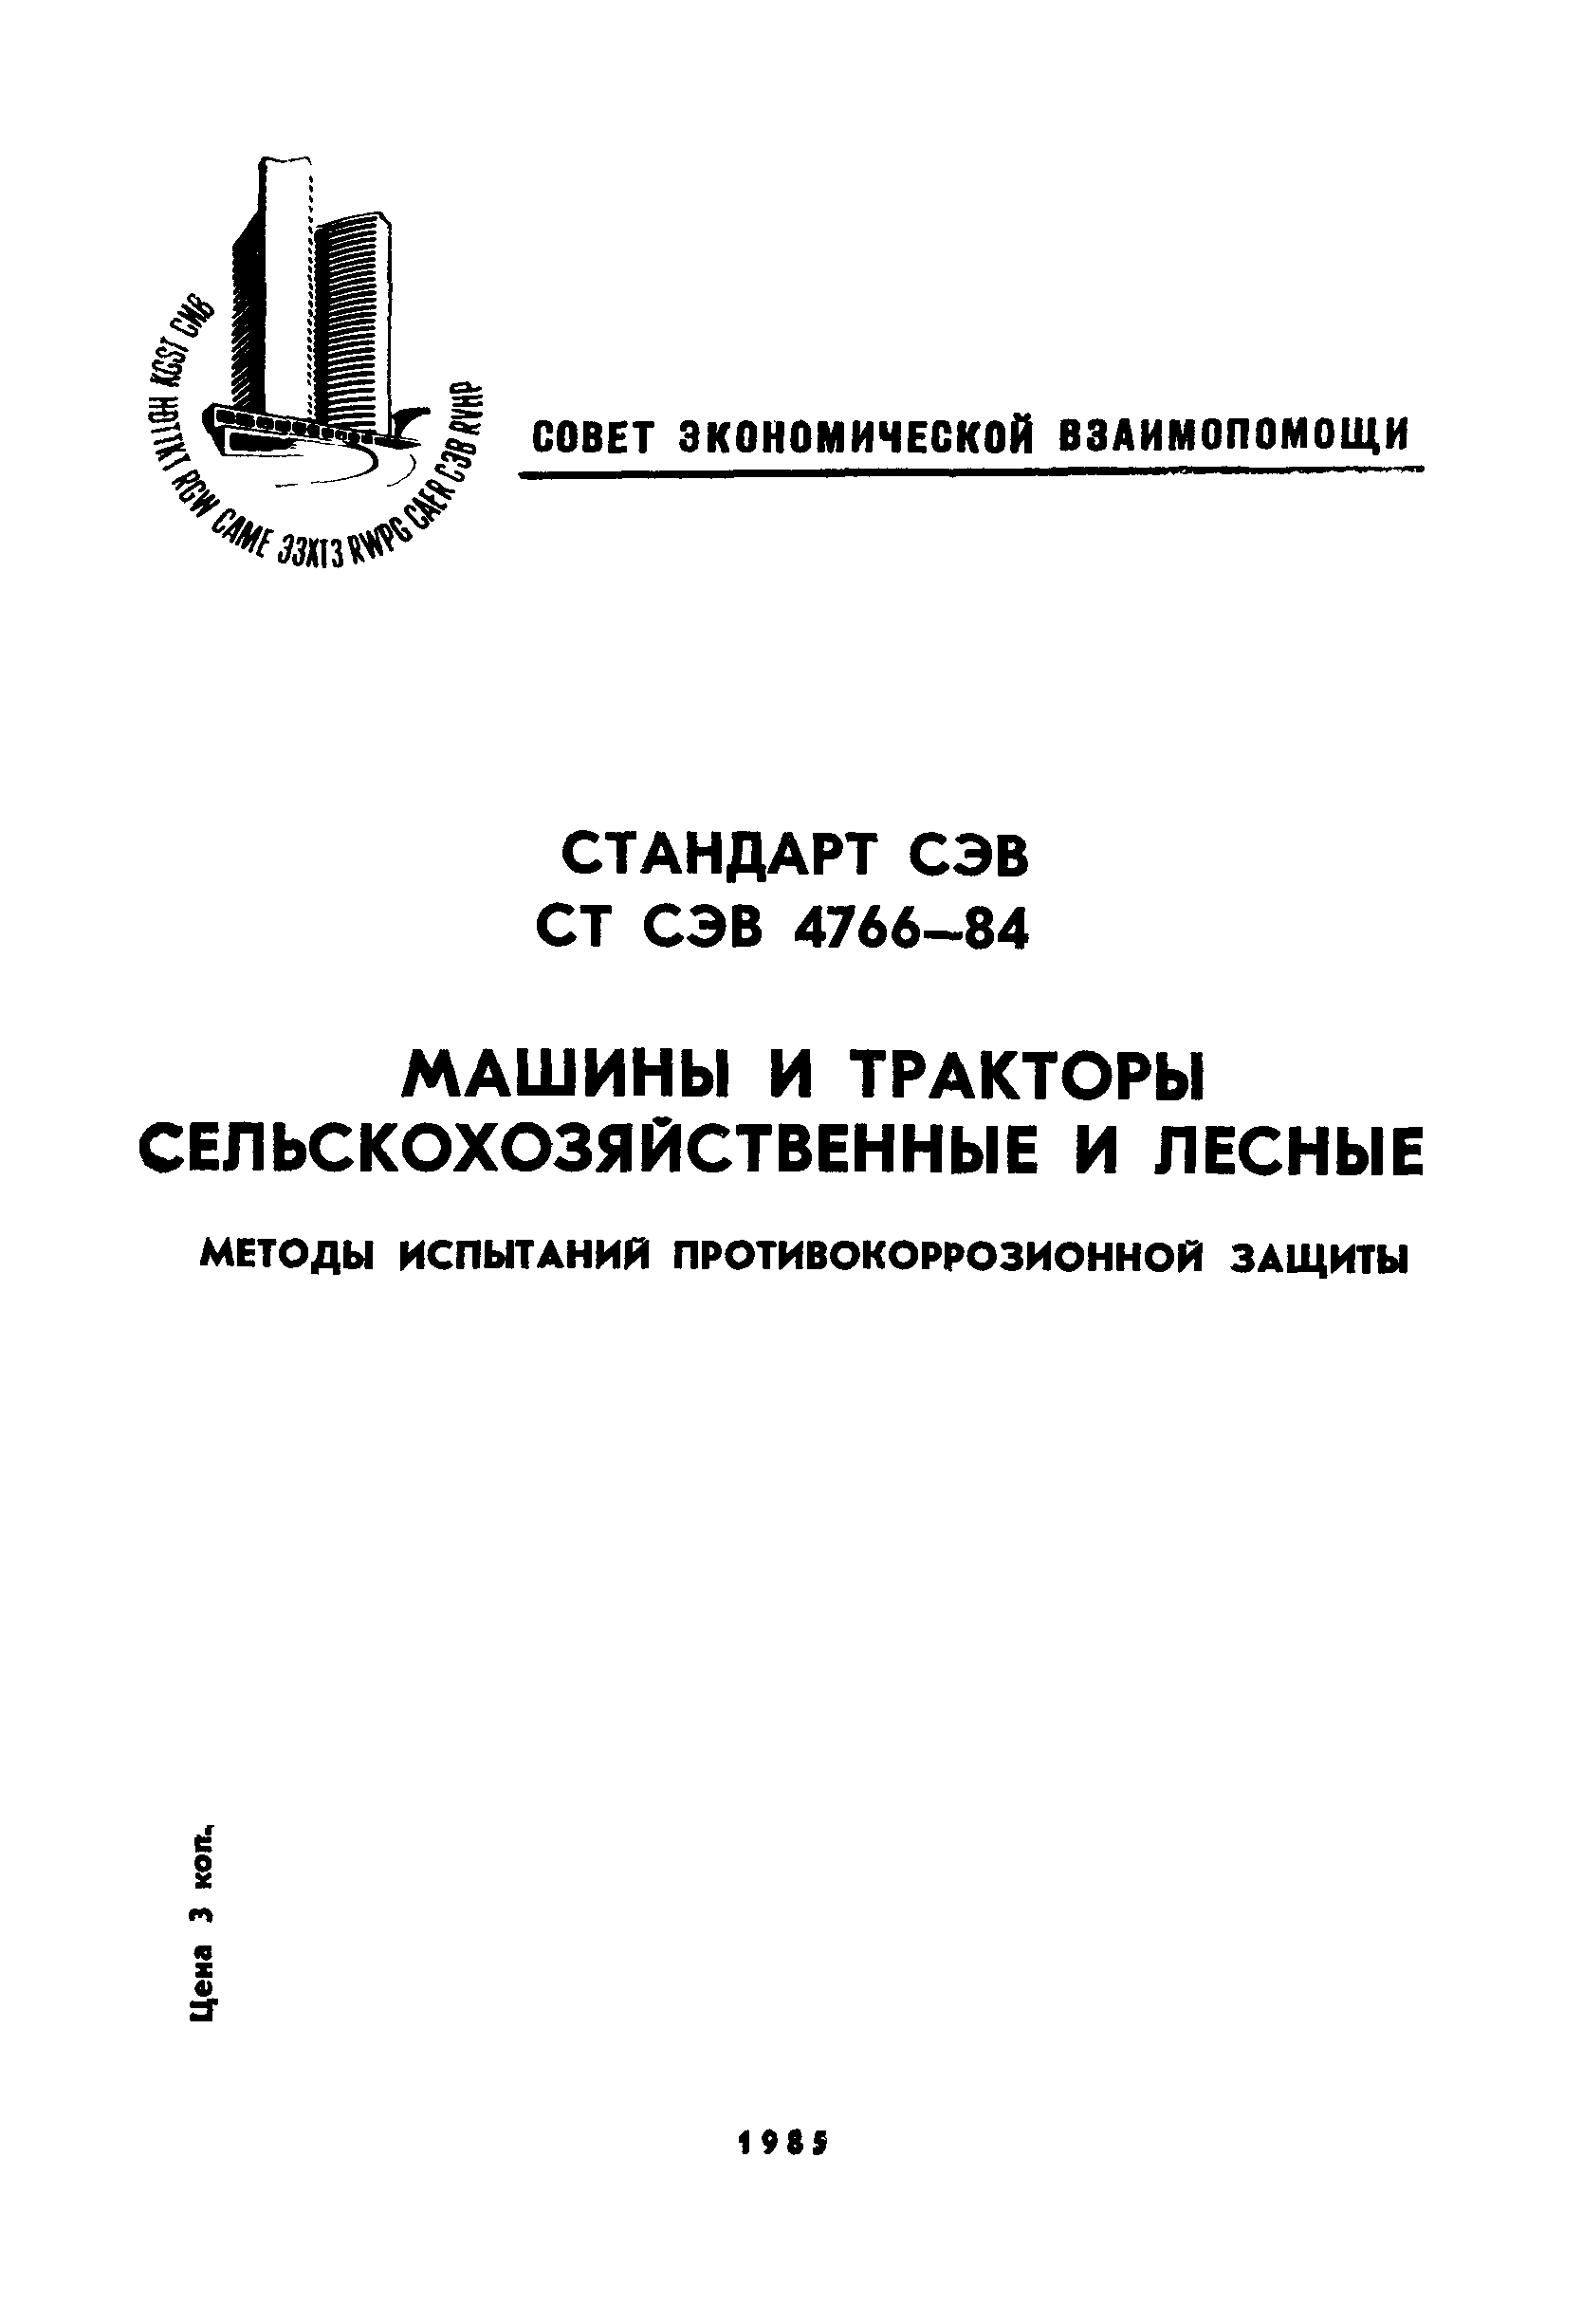 СТ СЭВ 4766-84